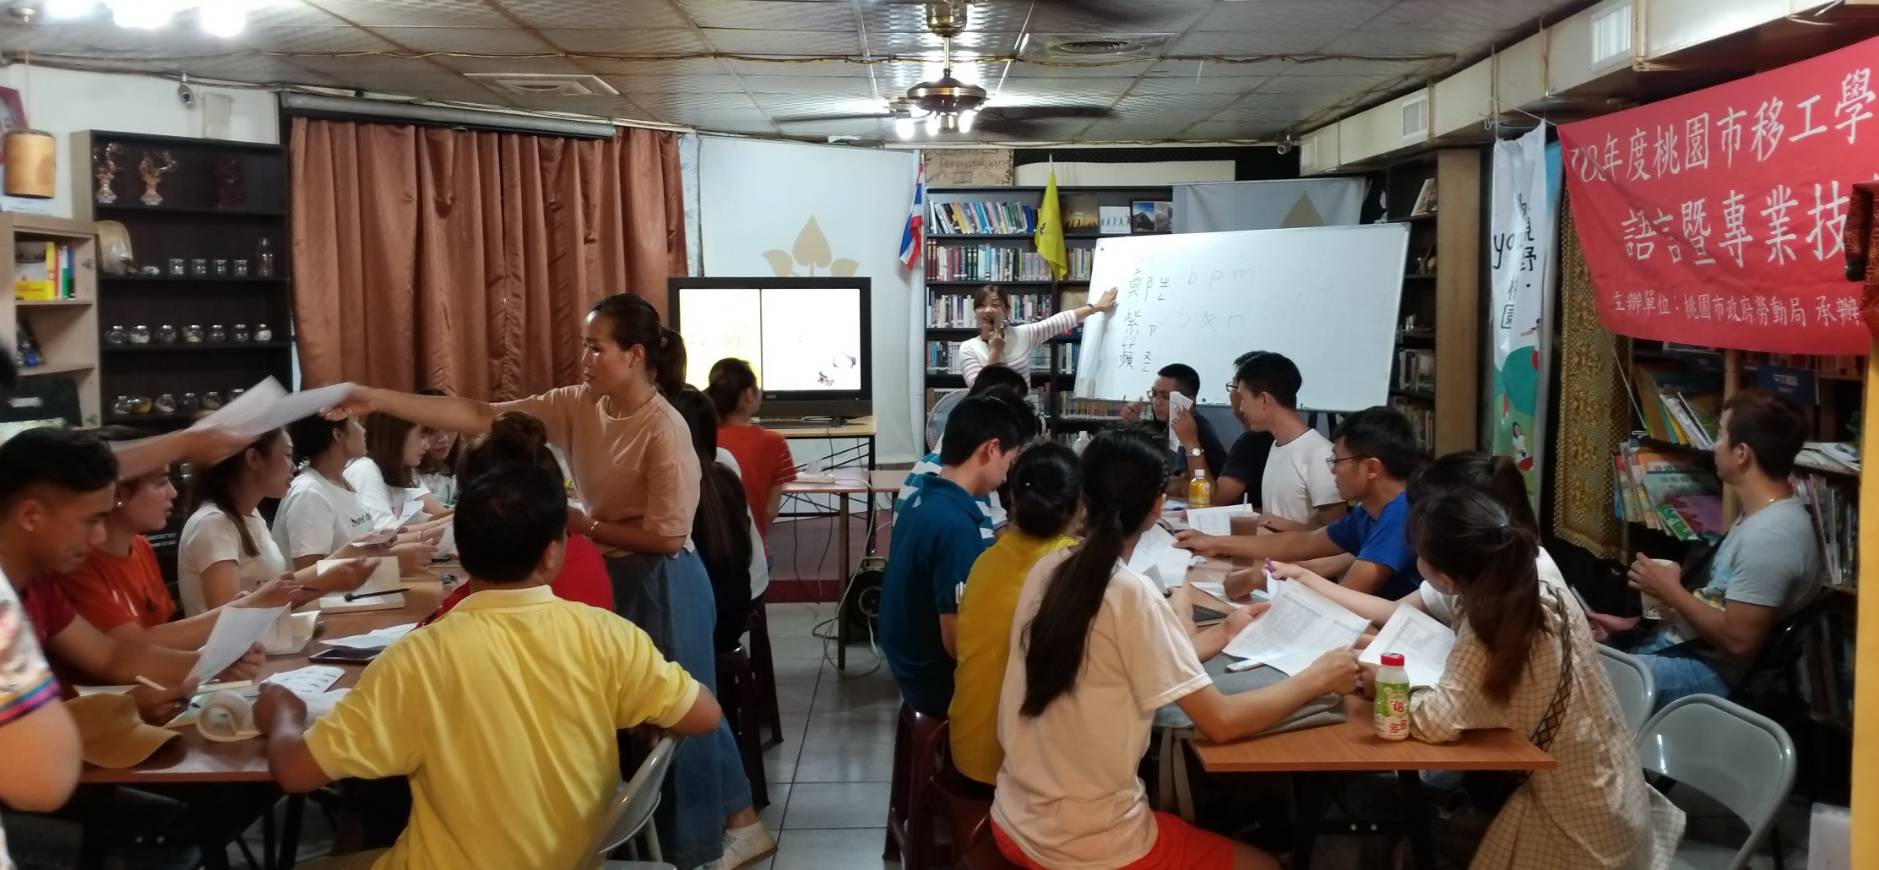 「Học viện Lao động nước ngoài」với khóa học tiếng Trung hỗ trợ LĐNN học tập ngôn ngữ (ảnh: Chính phủ Tp Đào Viên